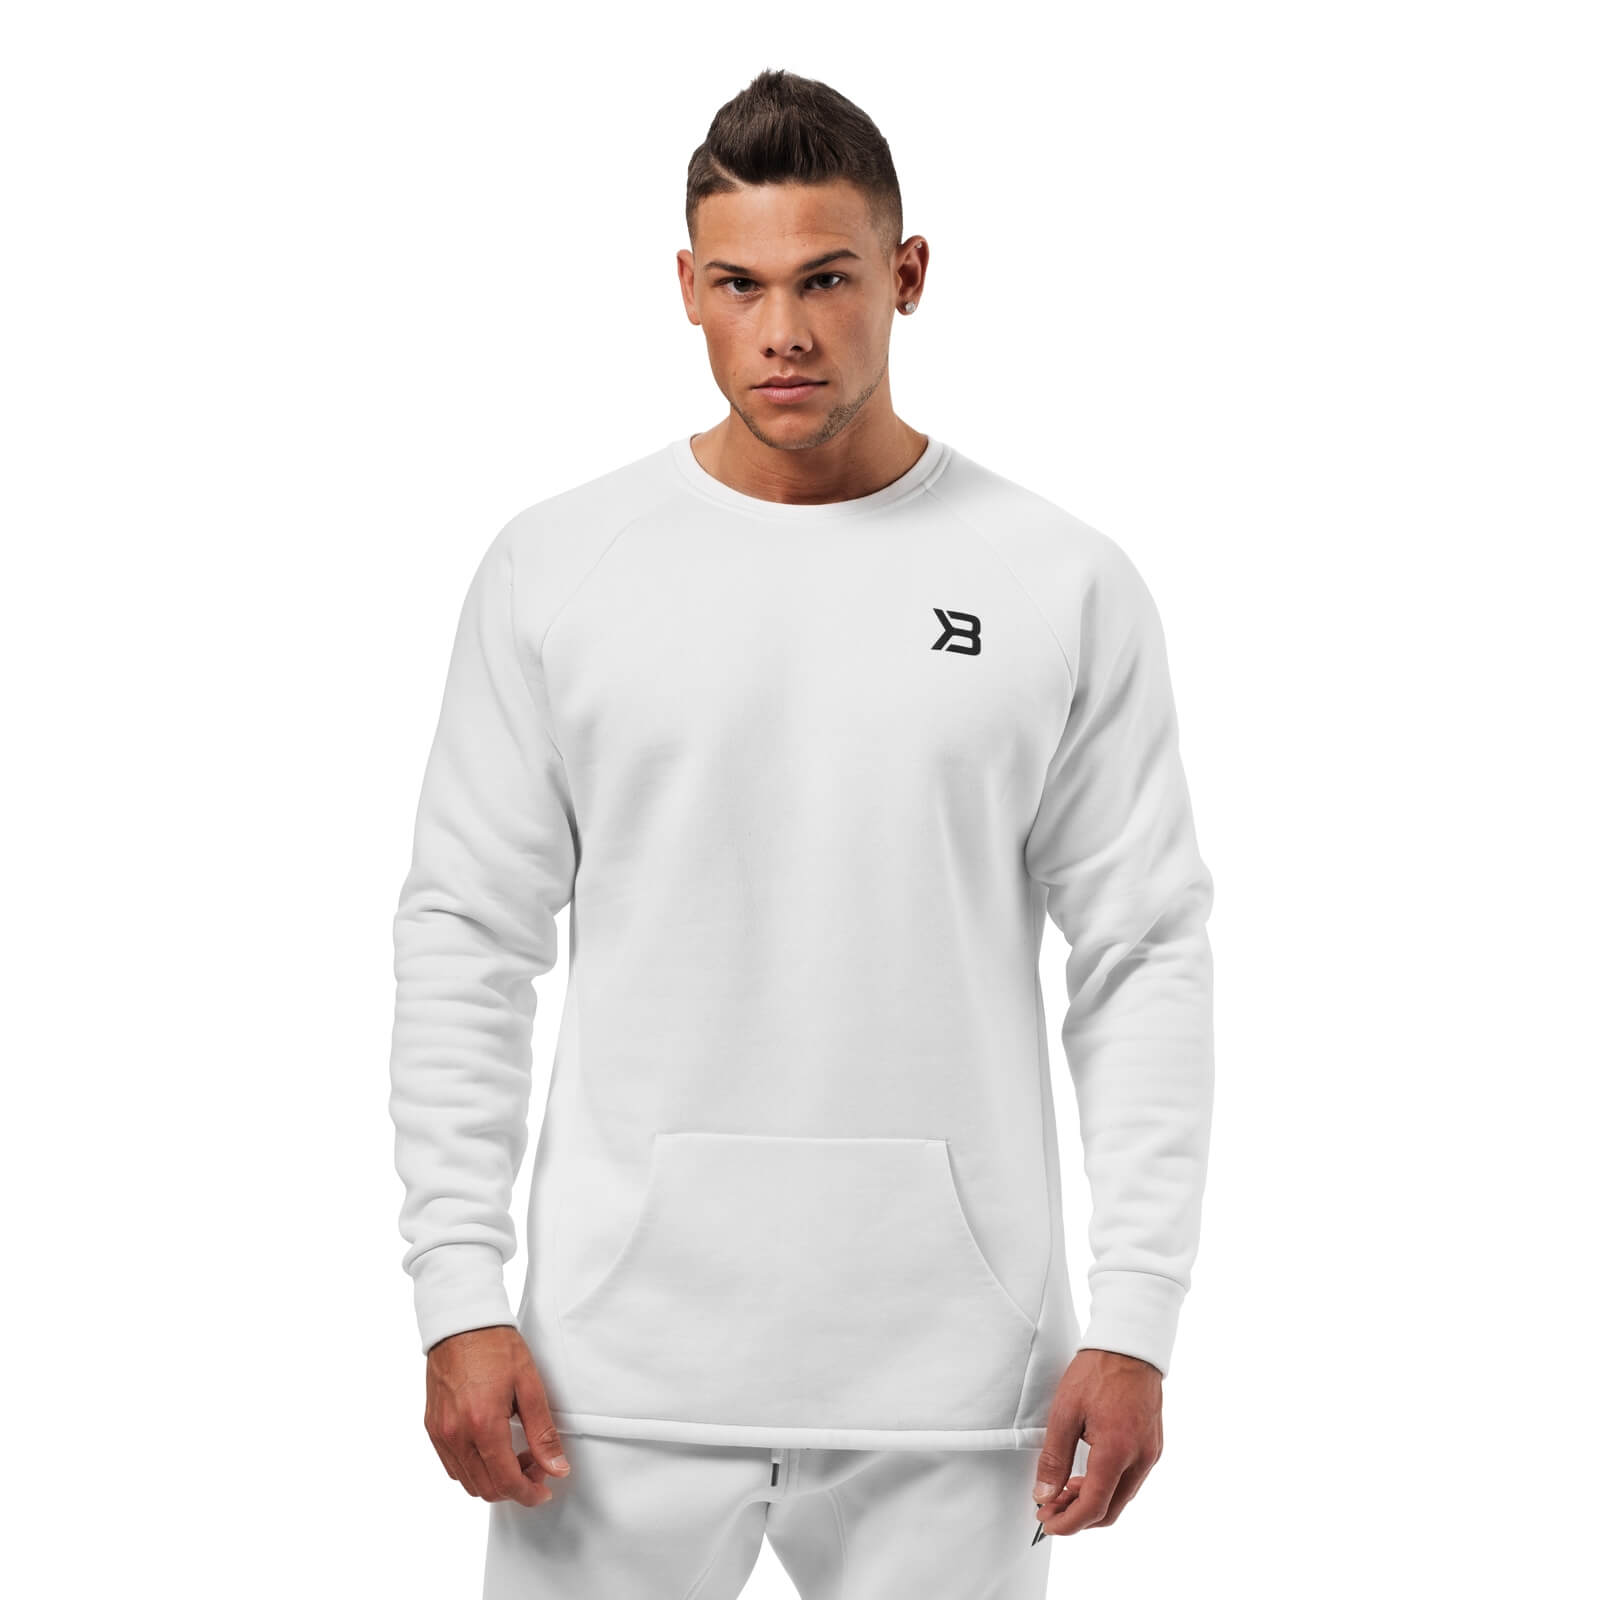 Sjekke Astor Sweater, white, Better Bodies hos SportGymButikken.no